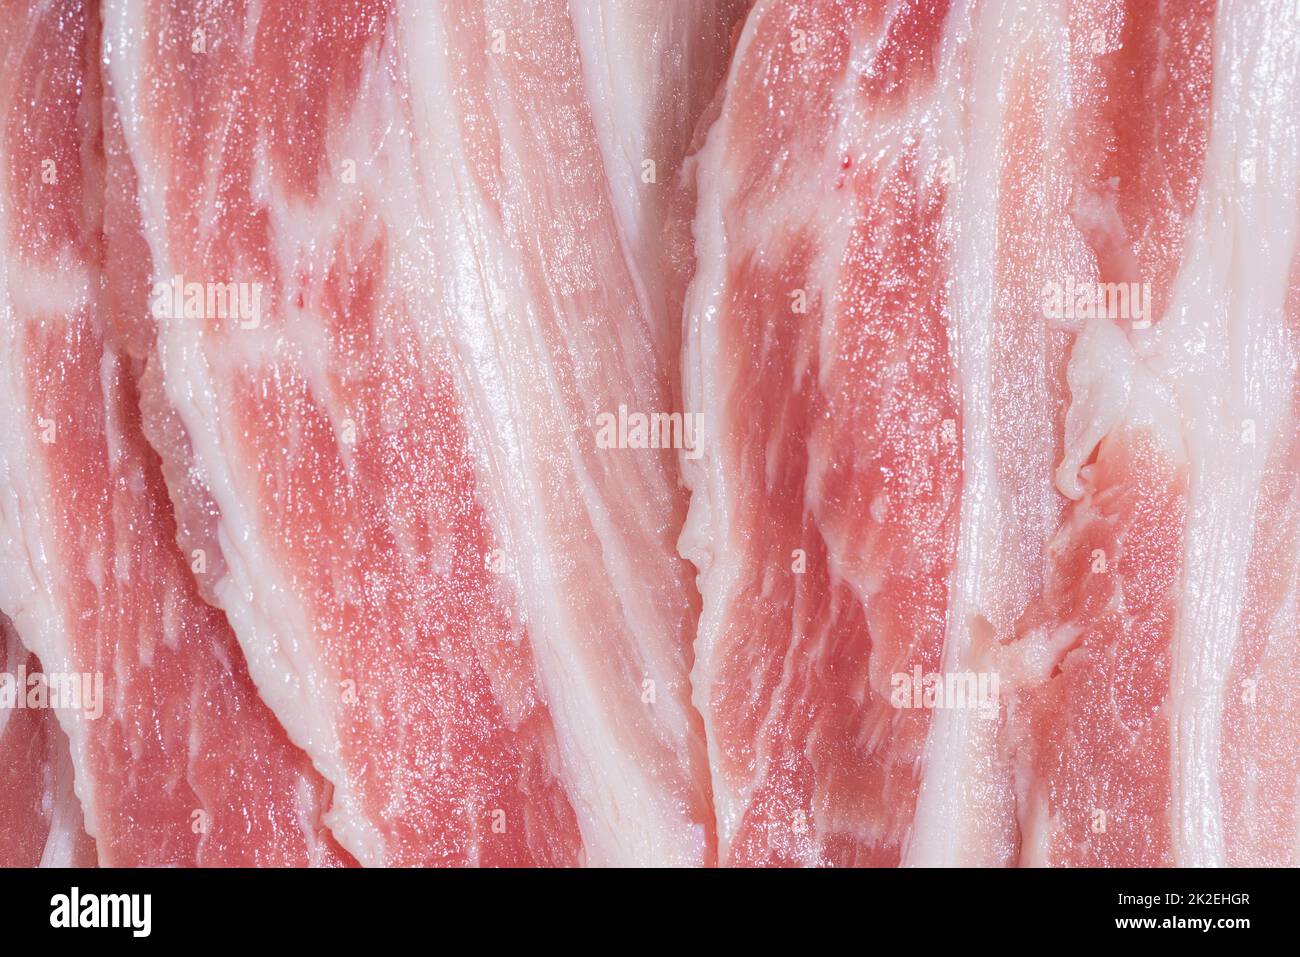 Confezione di primo piano fette fresche di pancetta di maiale Foto Stock